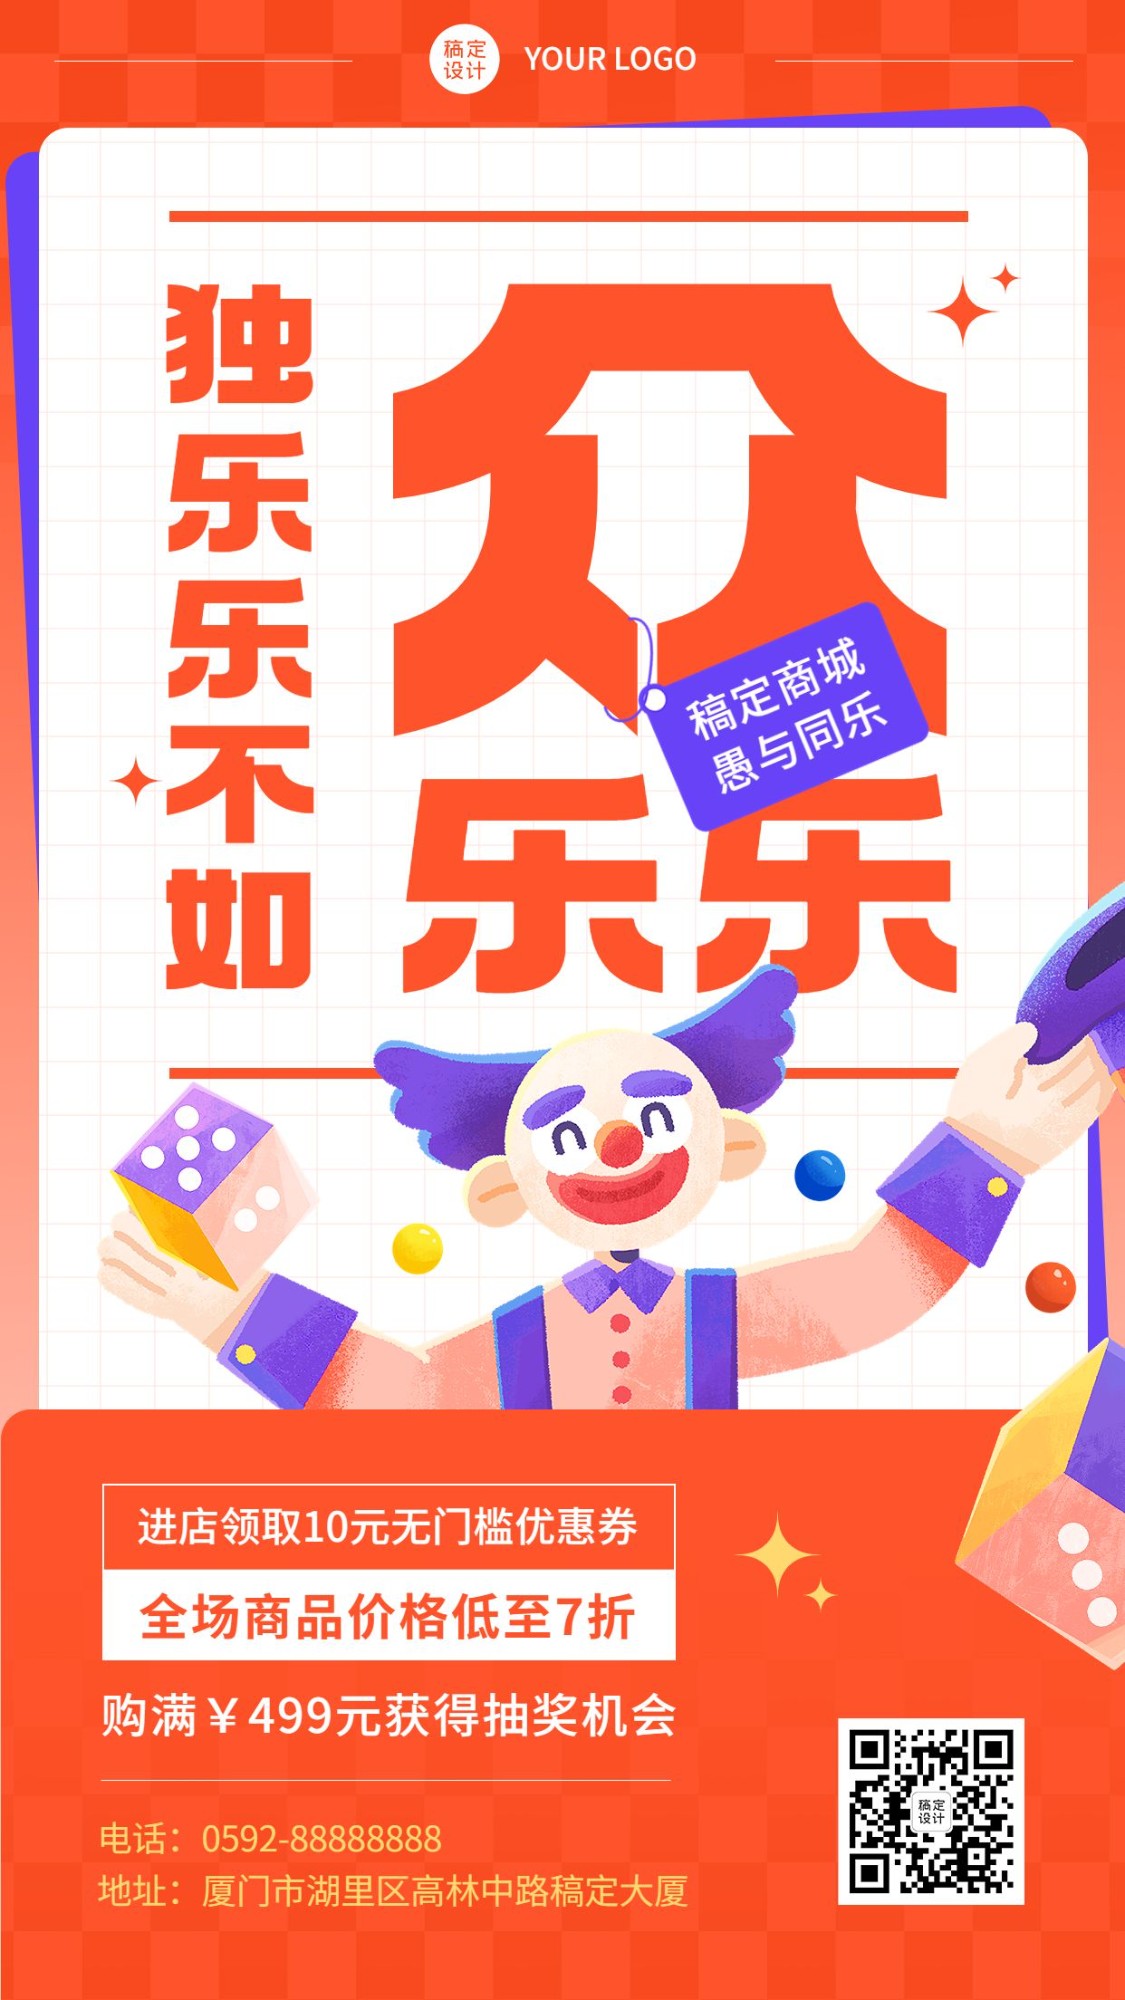 愚人节节日促销插画手机海报预览效果